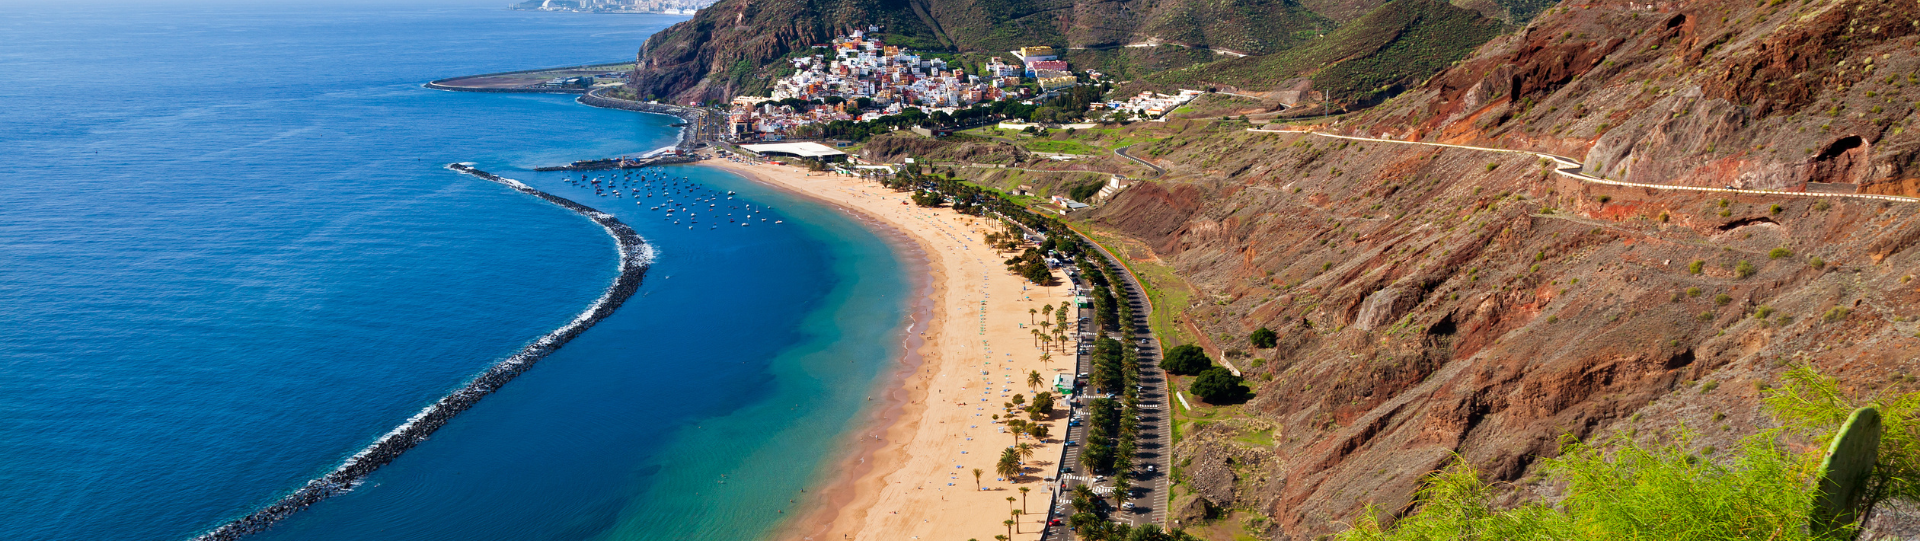 Les îles Canaries - La destination de vacances idéale pour les amateurs de soleil